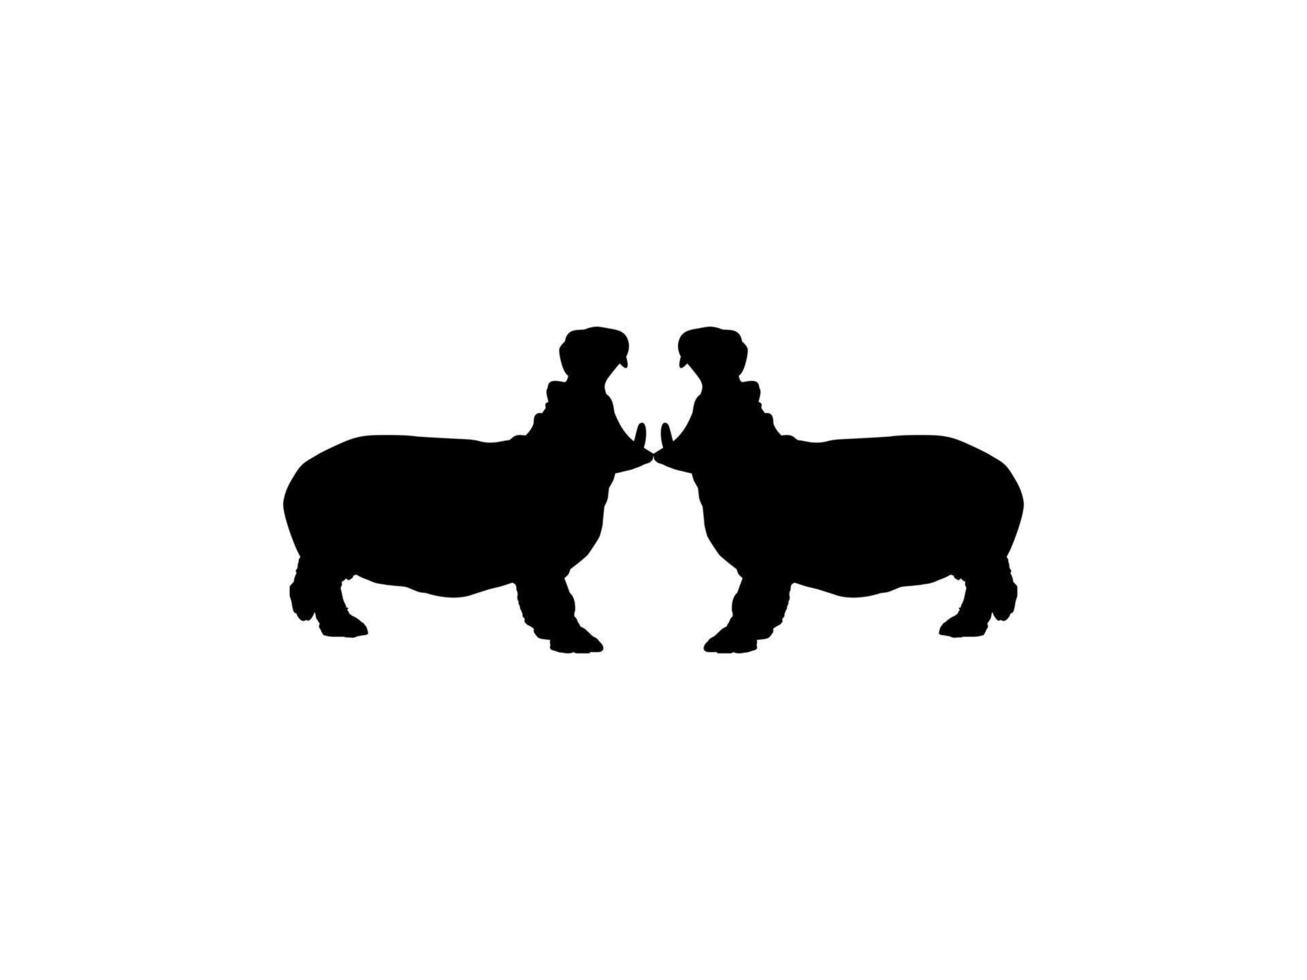 par do a hipopótamo, hipopótamo anfíbio. silhueta para logotipo, arte ilustração, ícone, símbolo, pictograma ou gráfico Projeto elemento. vetor ilustração